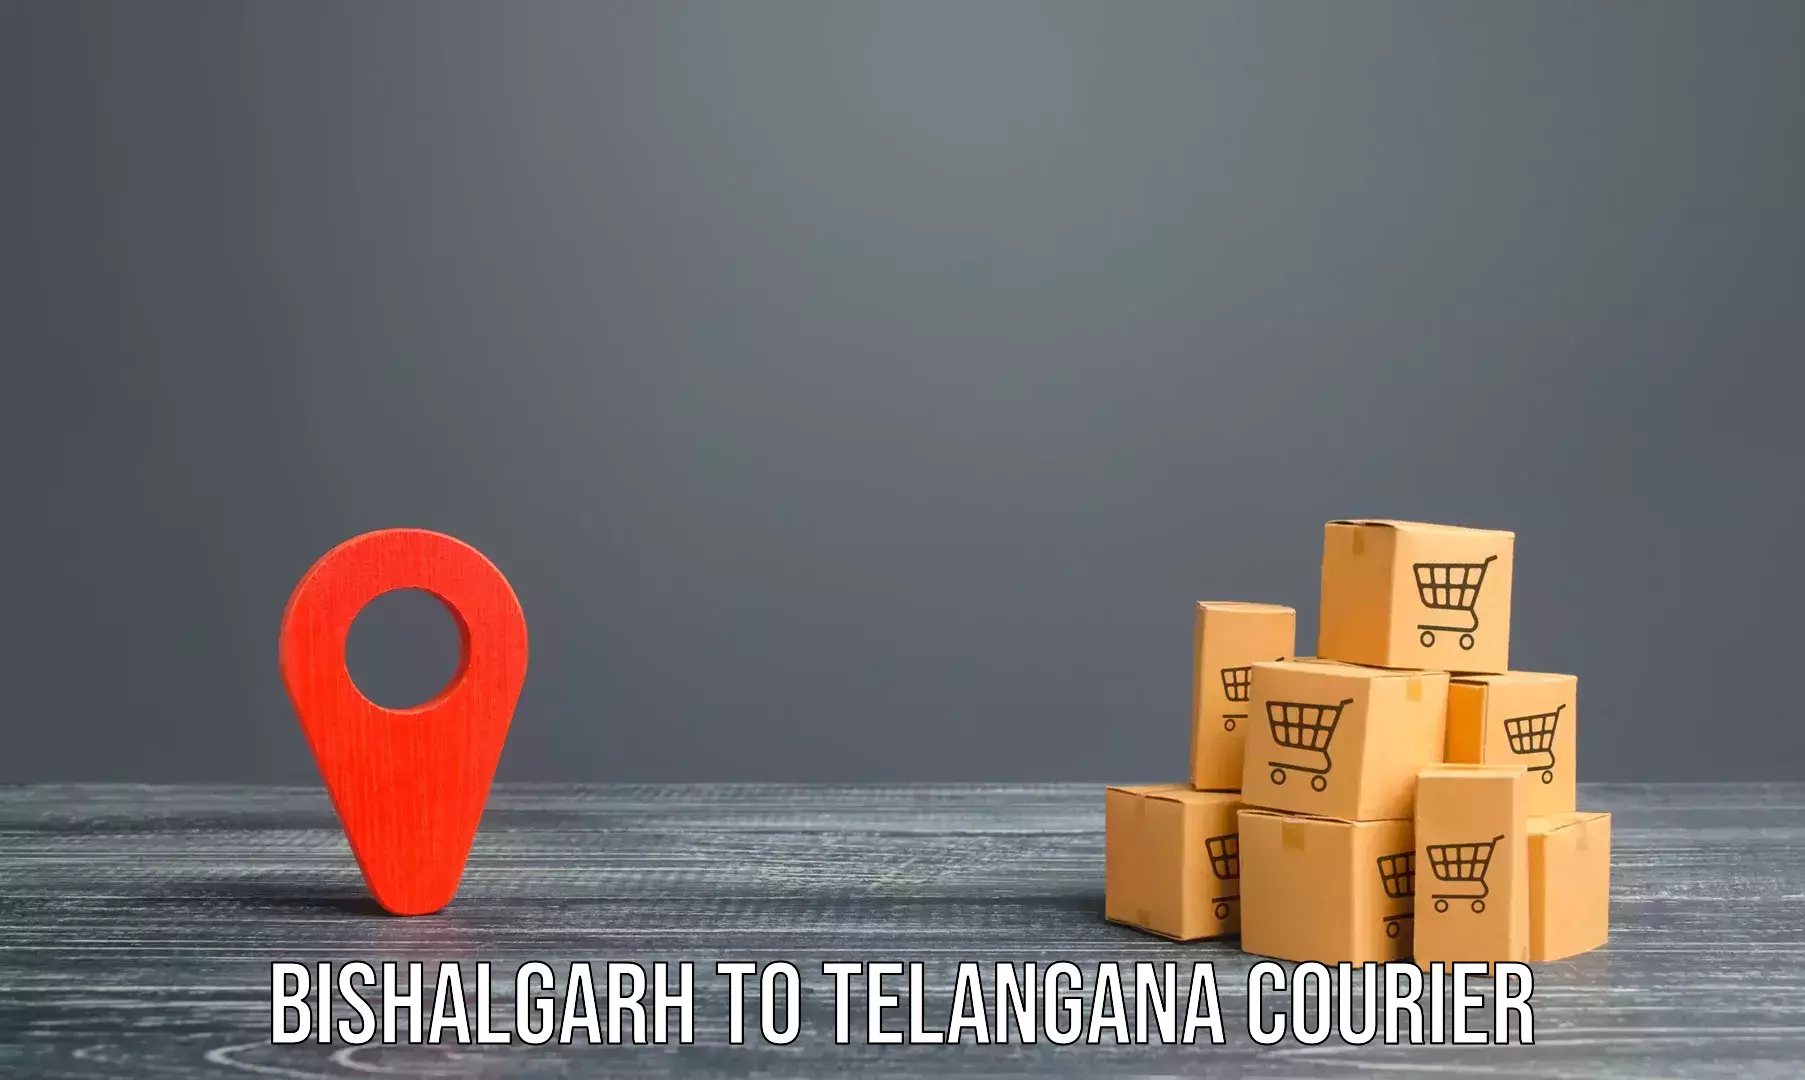 Furniture transport service Bishalgarh to Gangadhara